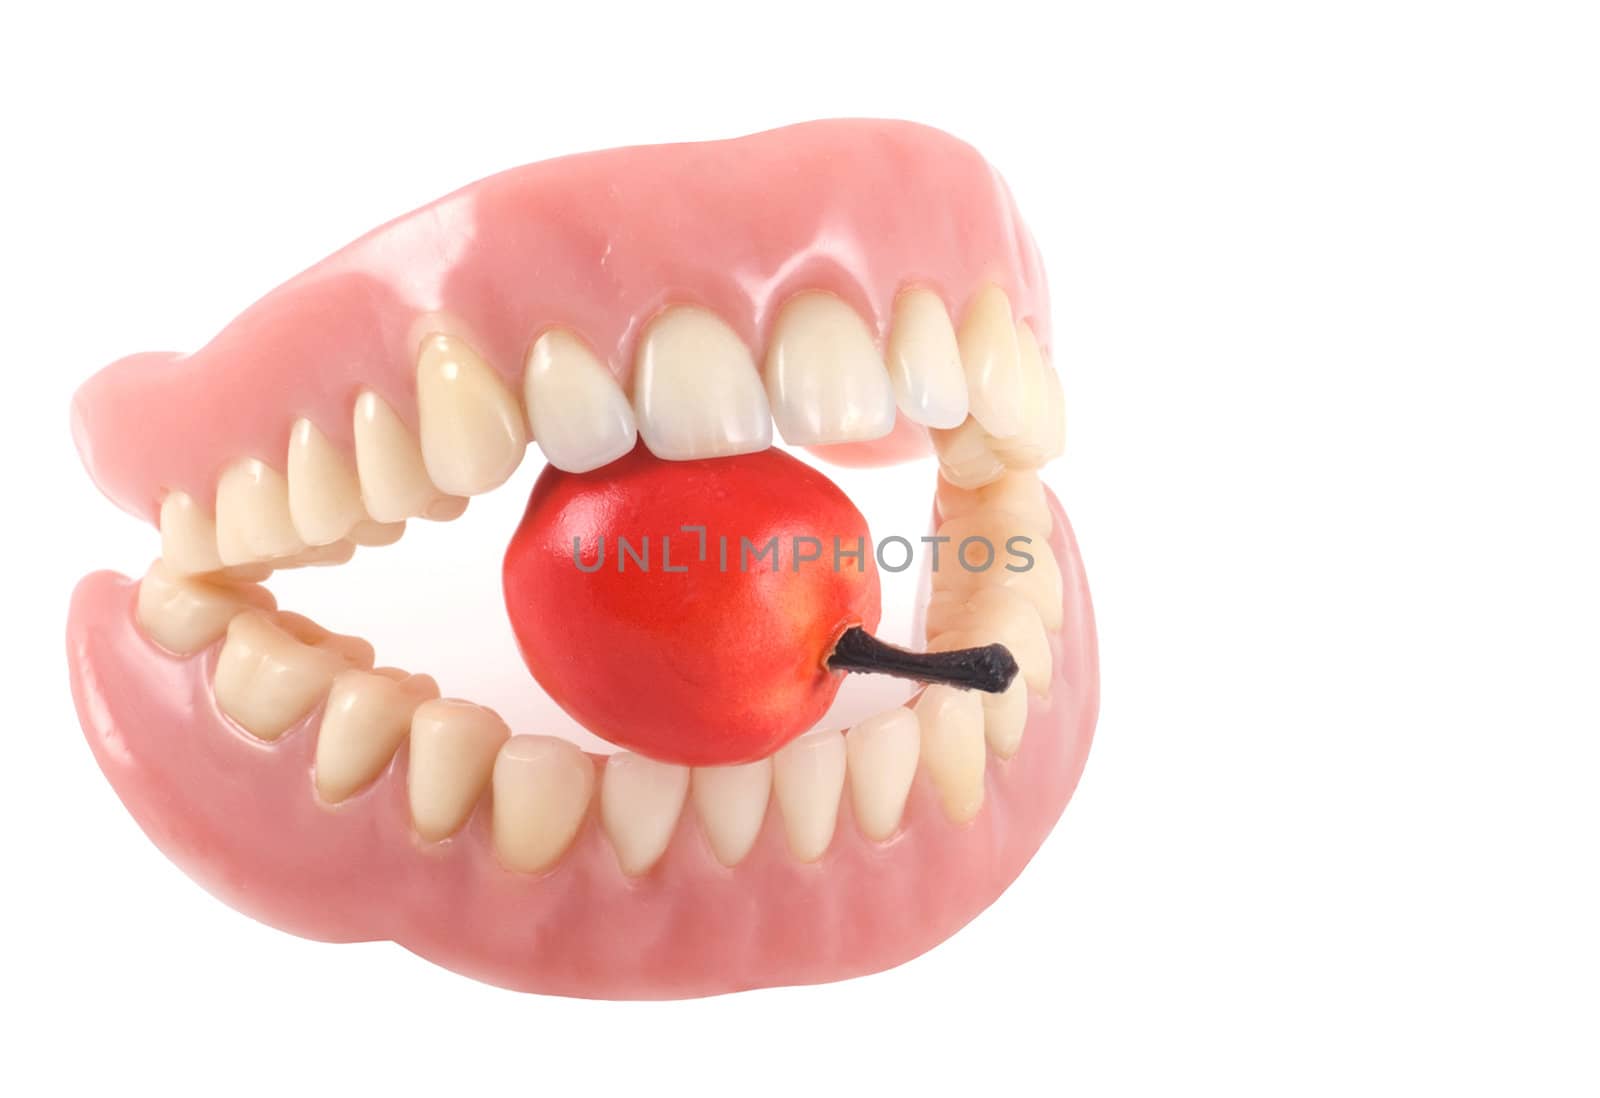 Teeth and apple. by SasPartout